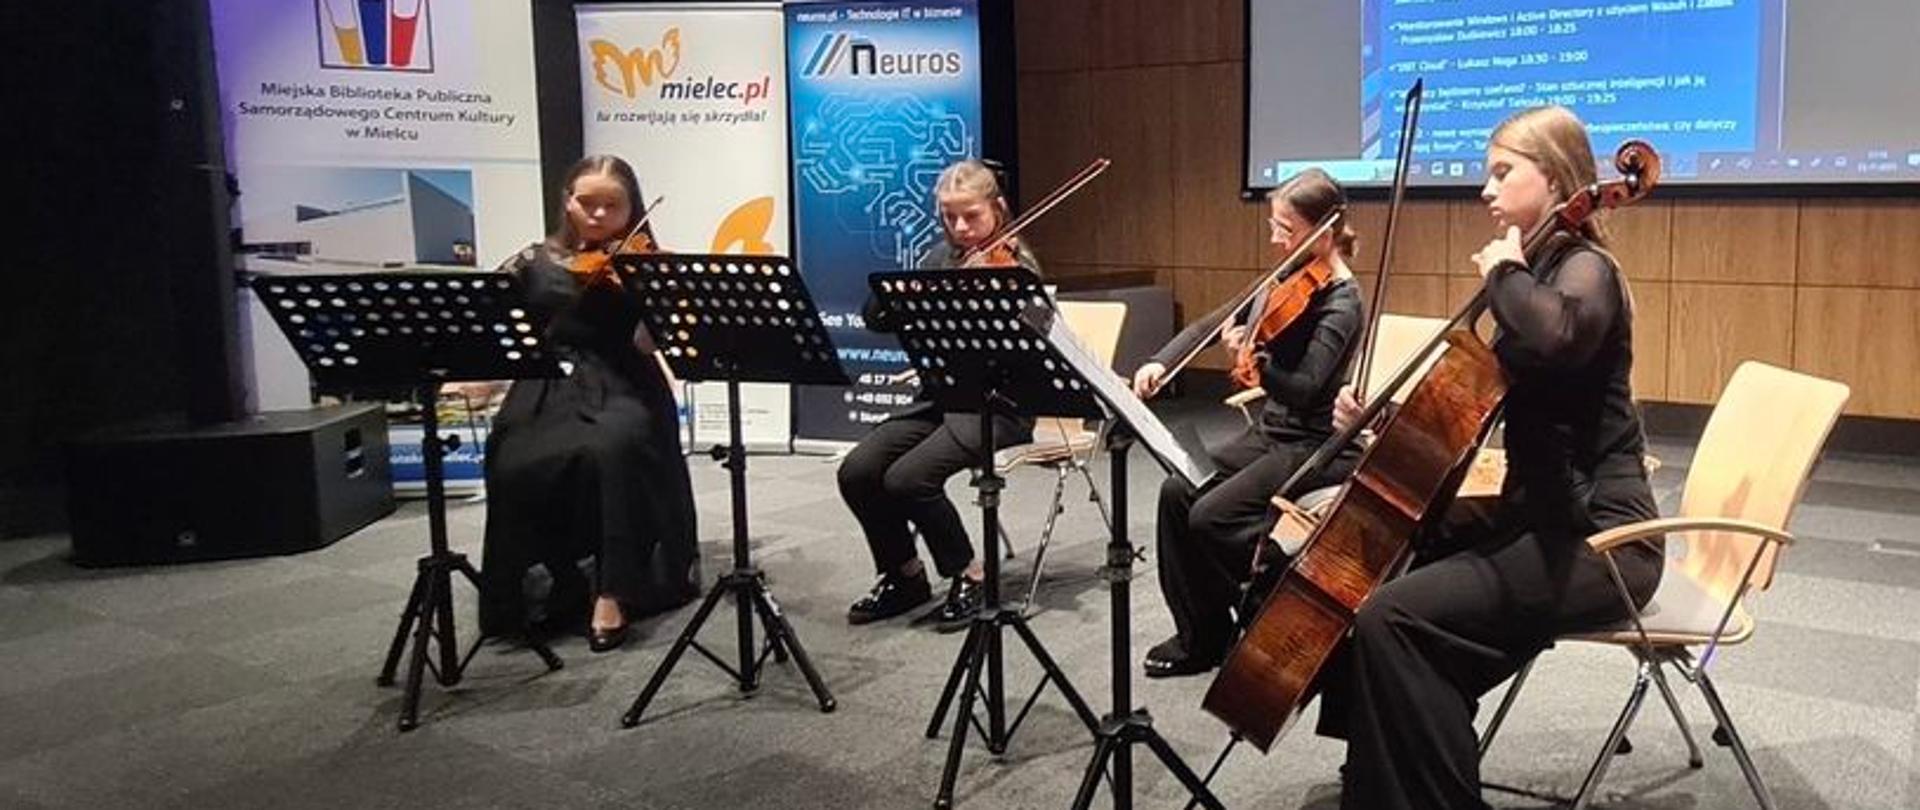 Członkinie kwartetu smyczkowego PSM II stopnia podczas koncertu w Miejskiej Bibliotece Publicznej w Mielcu